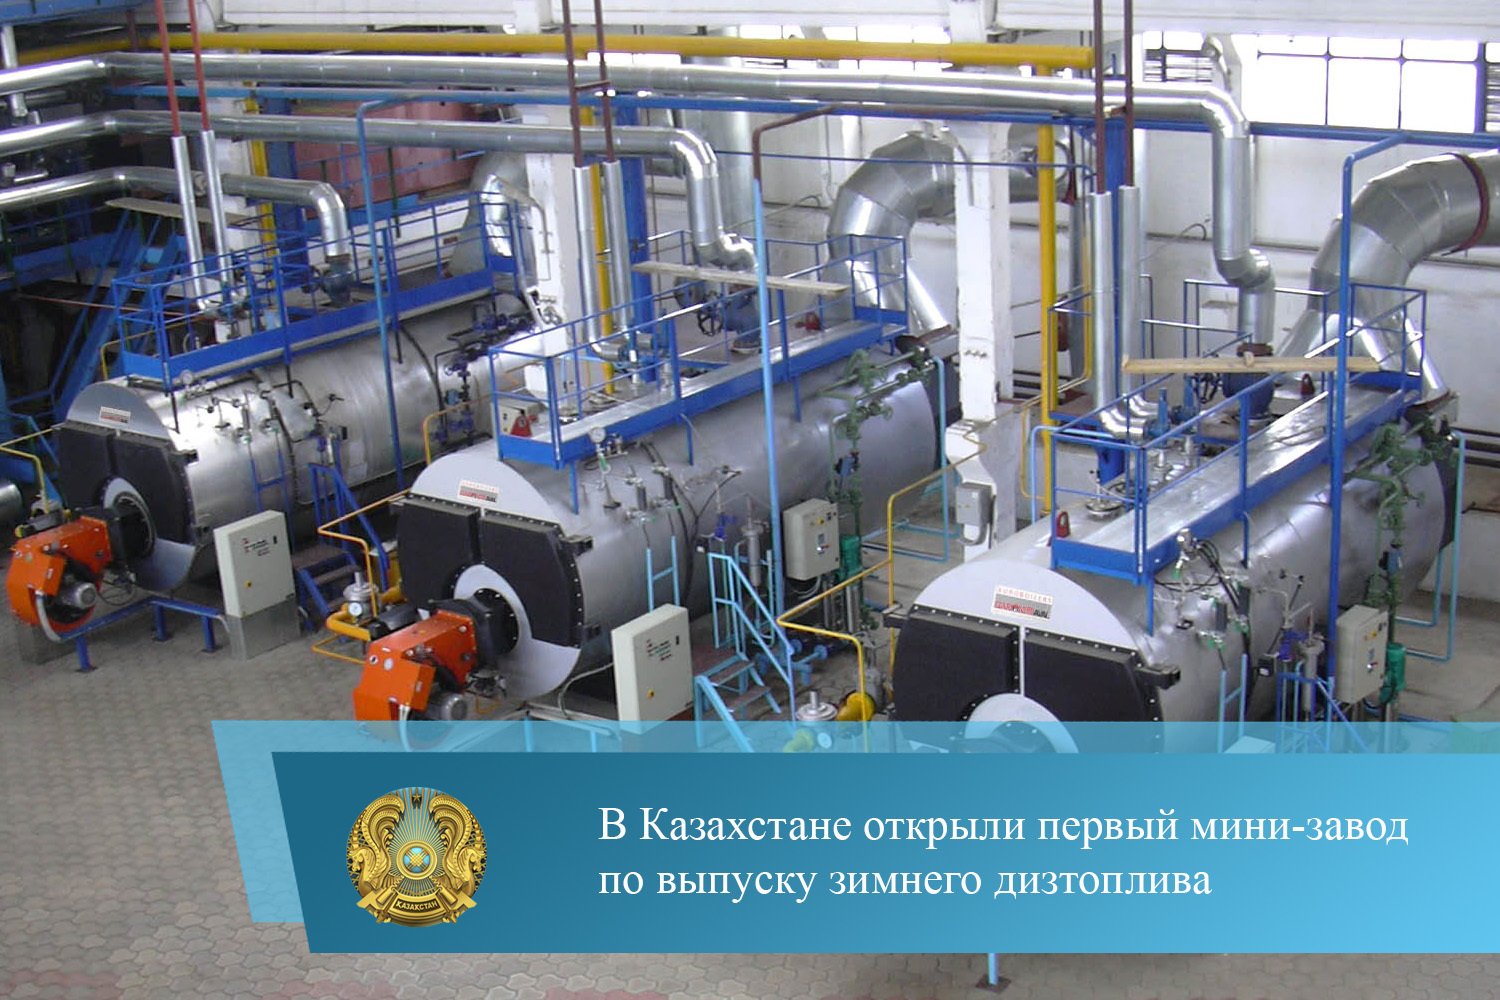 Производство матрасов в казахстане